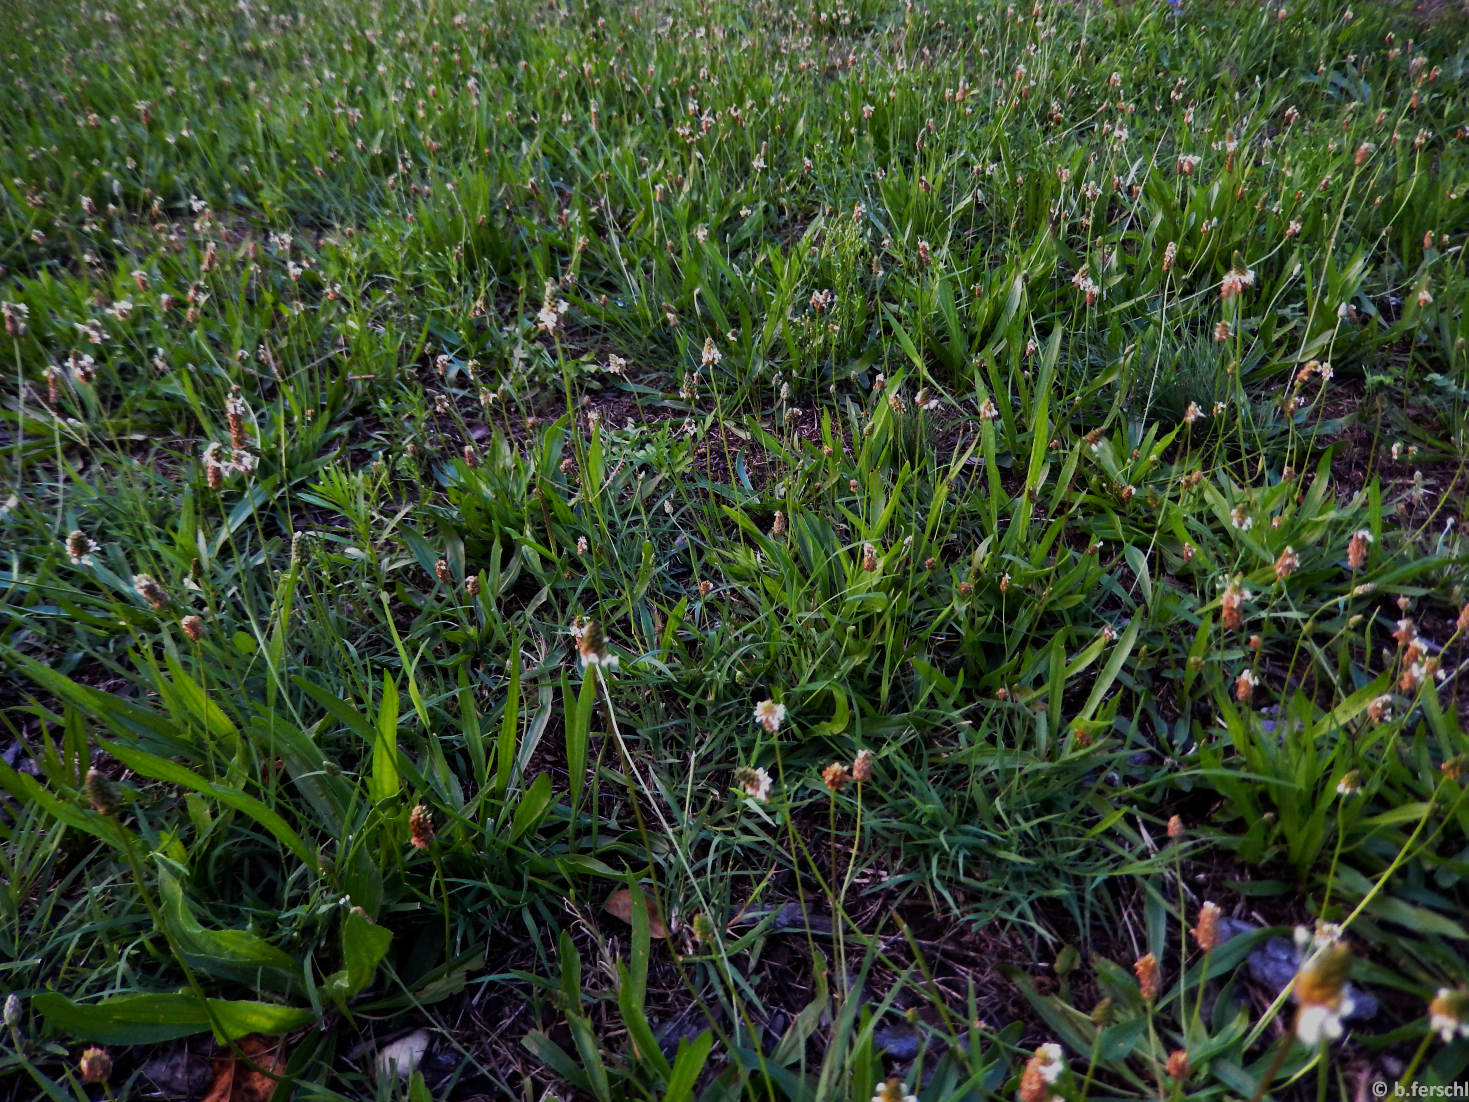 Plantago lanceolata lándzsás útifű) állomány városi gyepfelületben